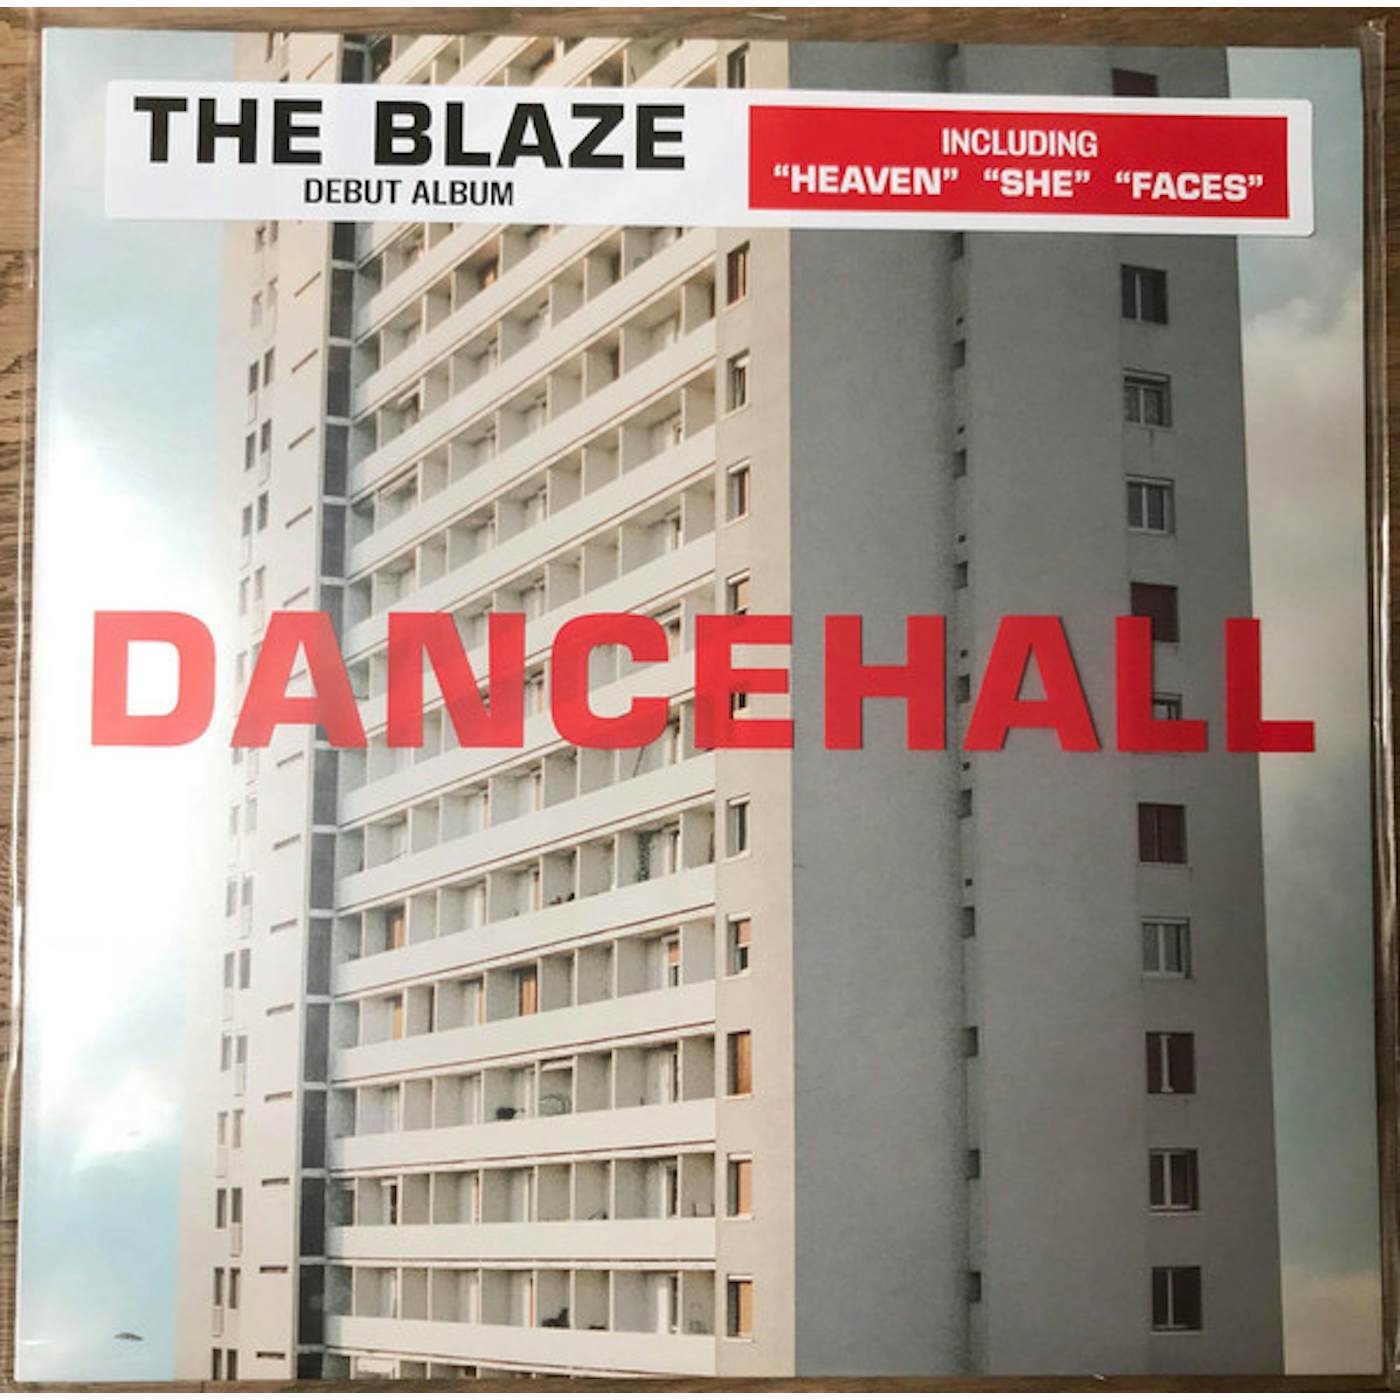 The Blaze DANCEHALL Vinyl Record